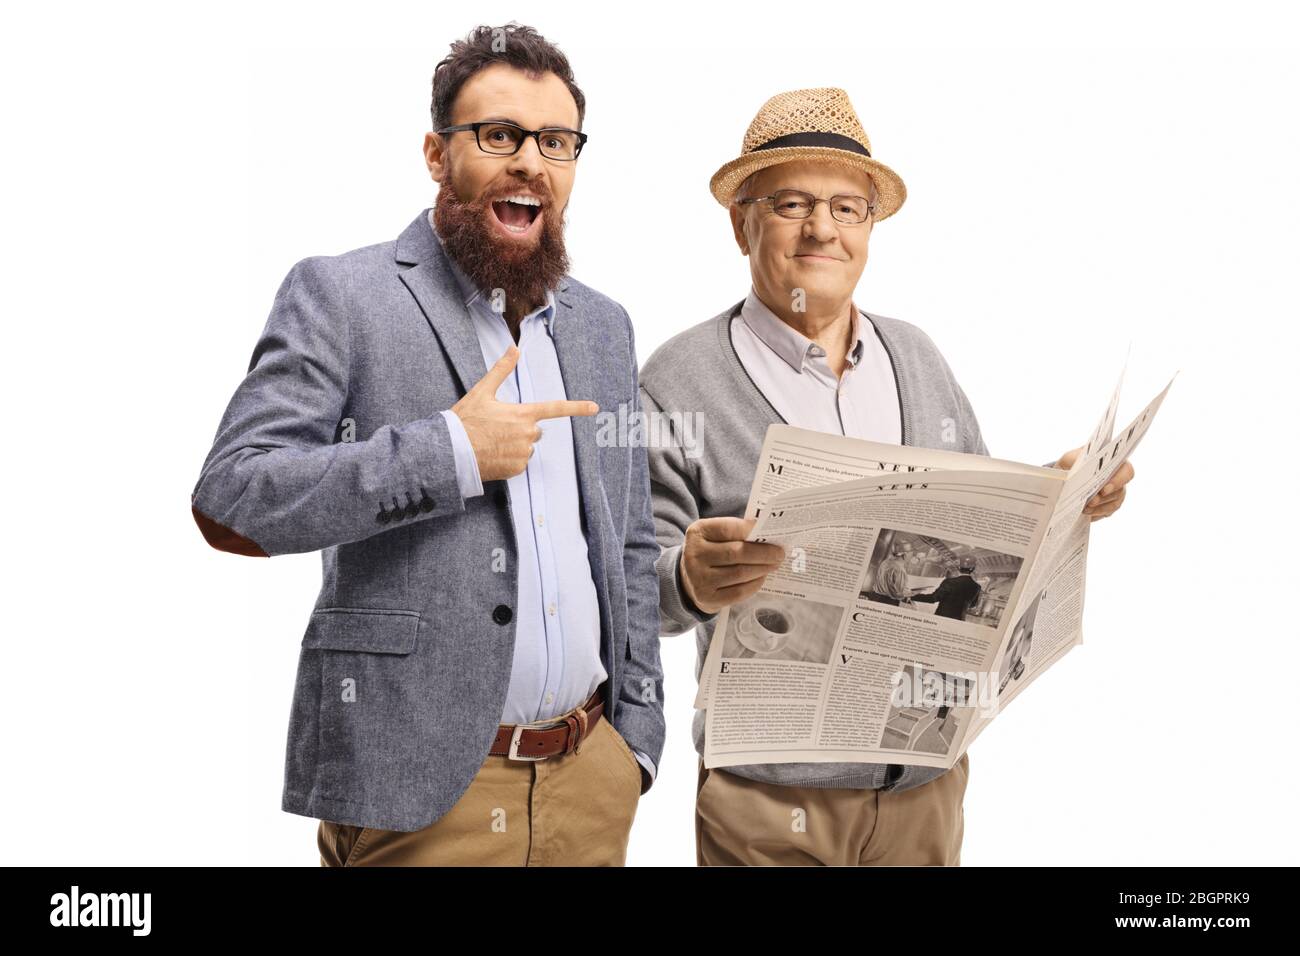 Uomo bearded ridendo e indicando un uomo anziano con un giornale isolato su sfondo bianco Foto Stock